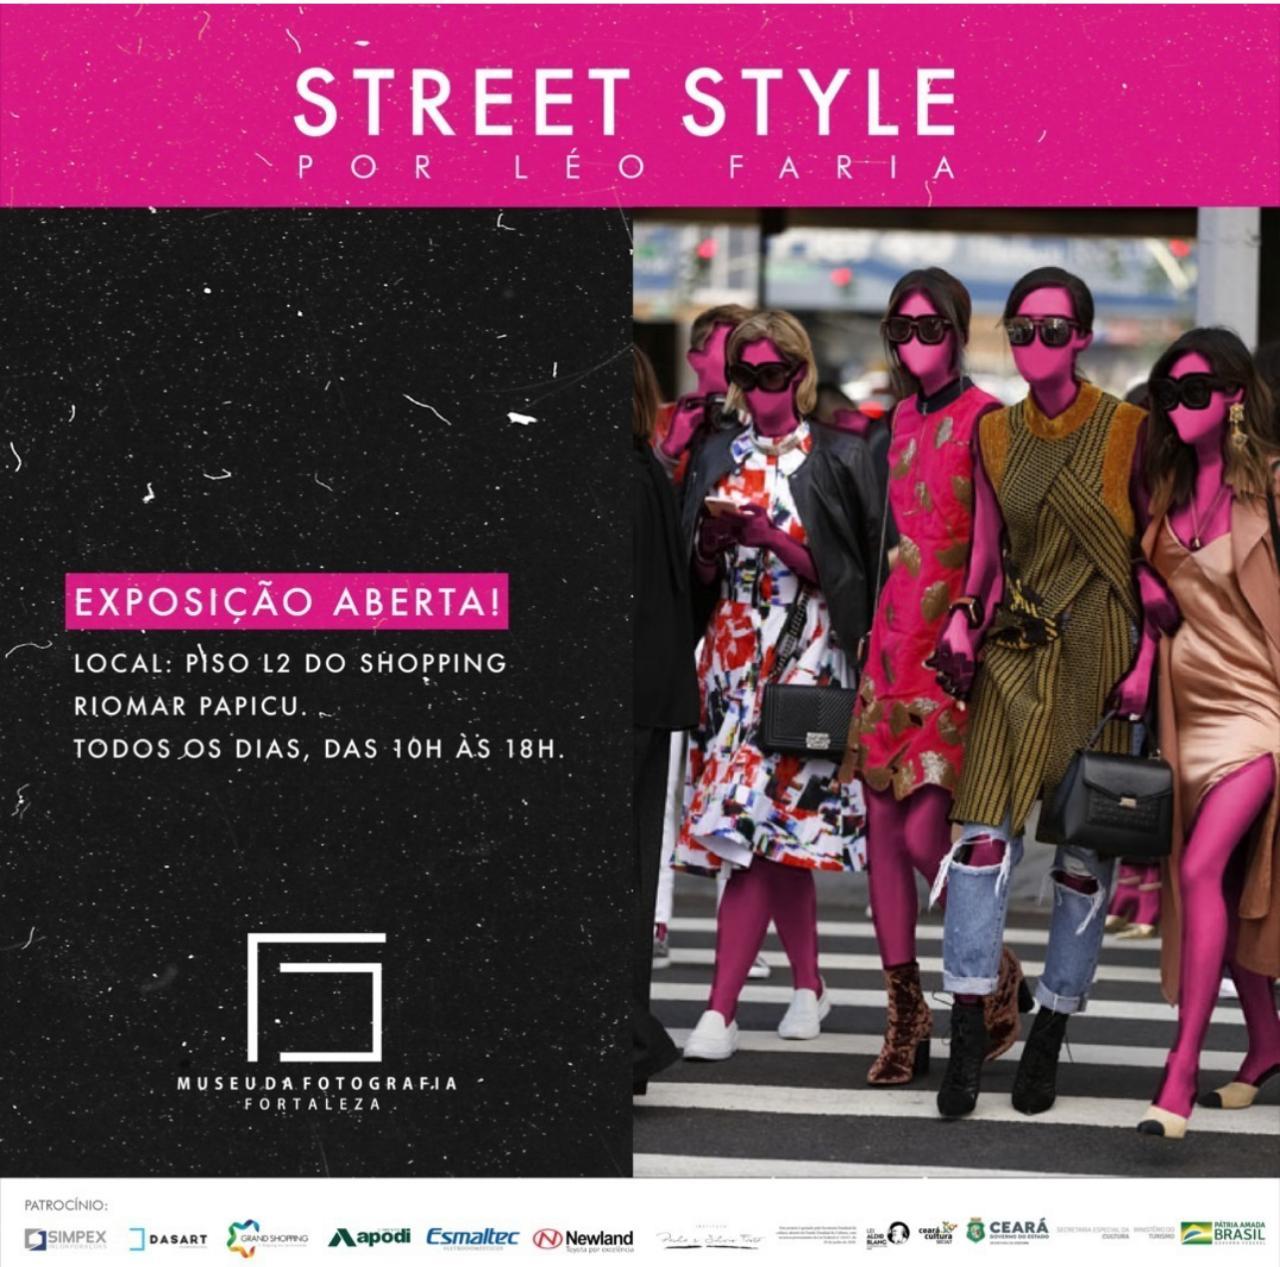 Street Style, por Léo Faria.